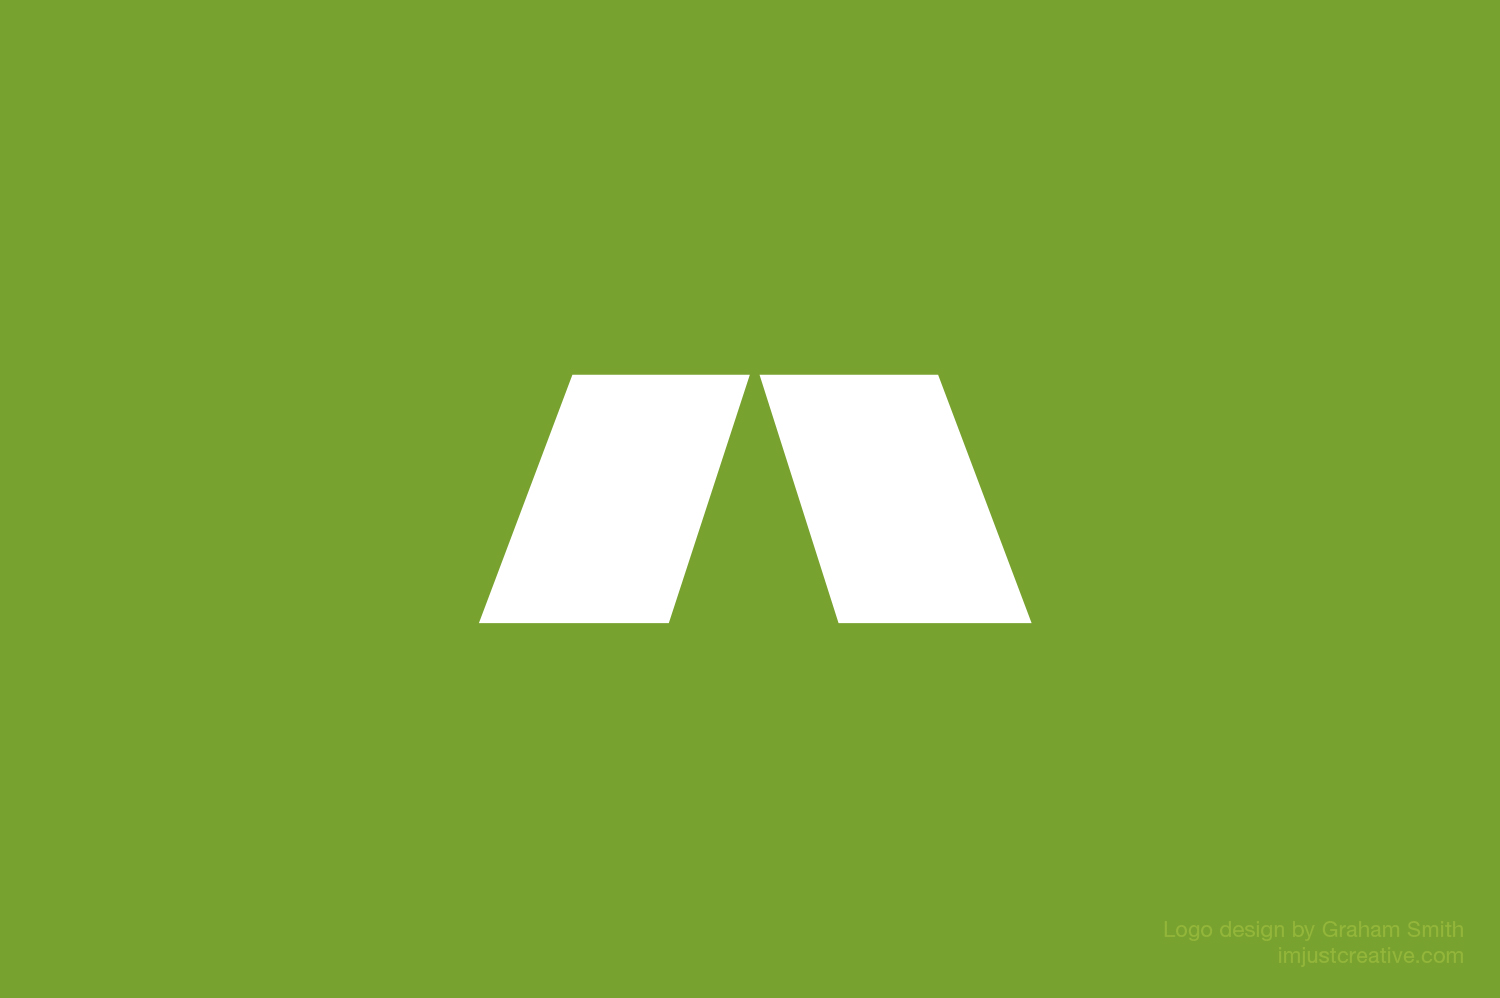 Abacus Insurance logo designed by imjustcreative